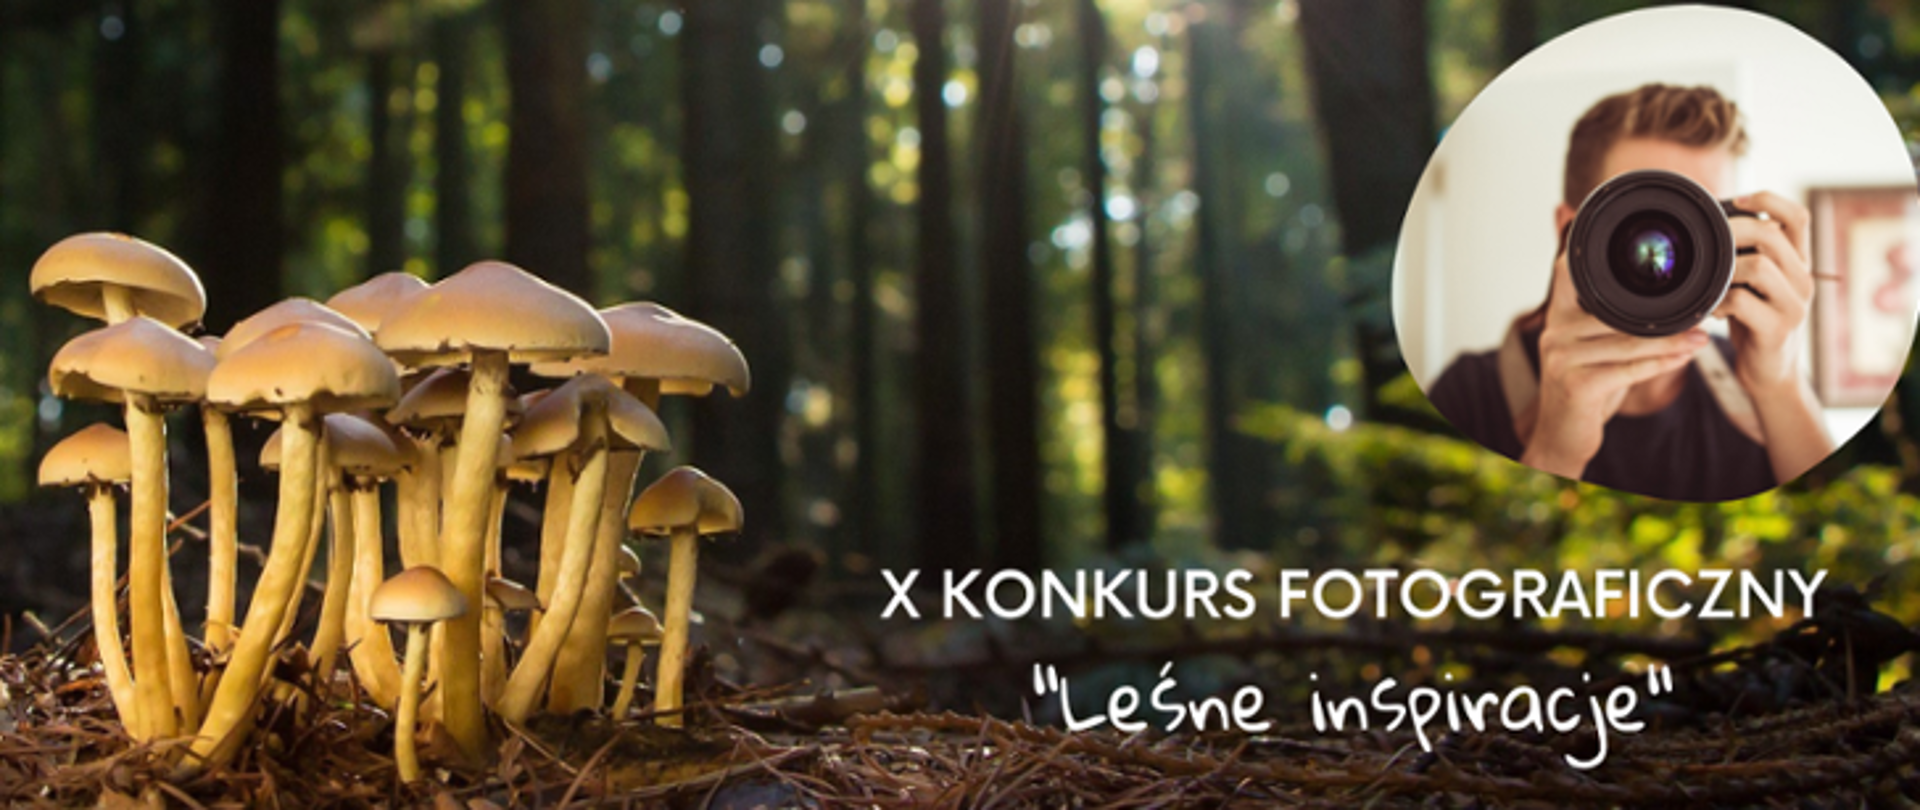 Zdjęcie grzybów w lesie z napisem: X Konkurs fotograficzny "leśne inspiracje"